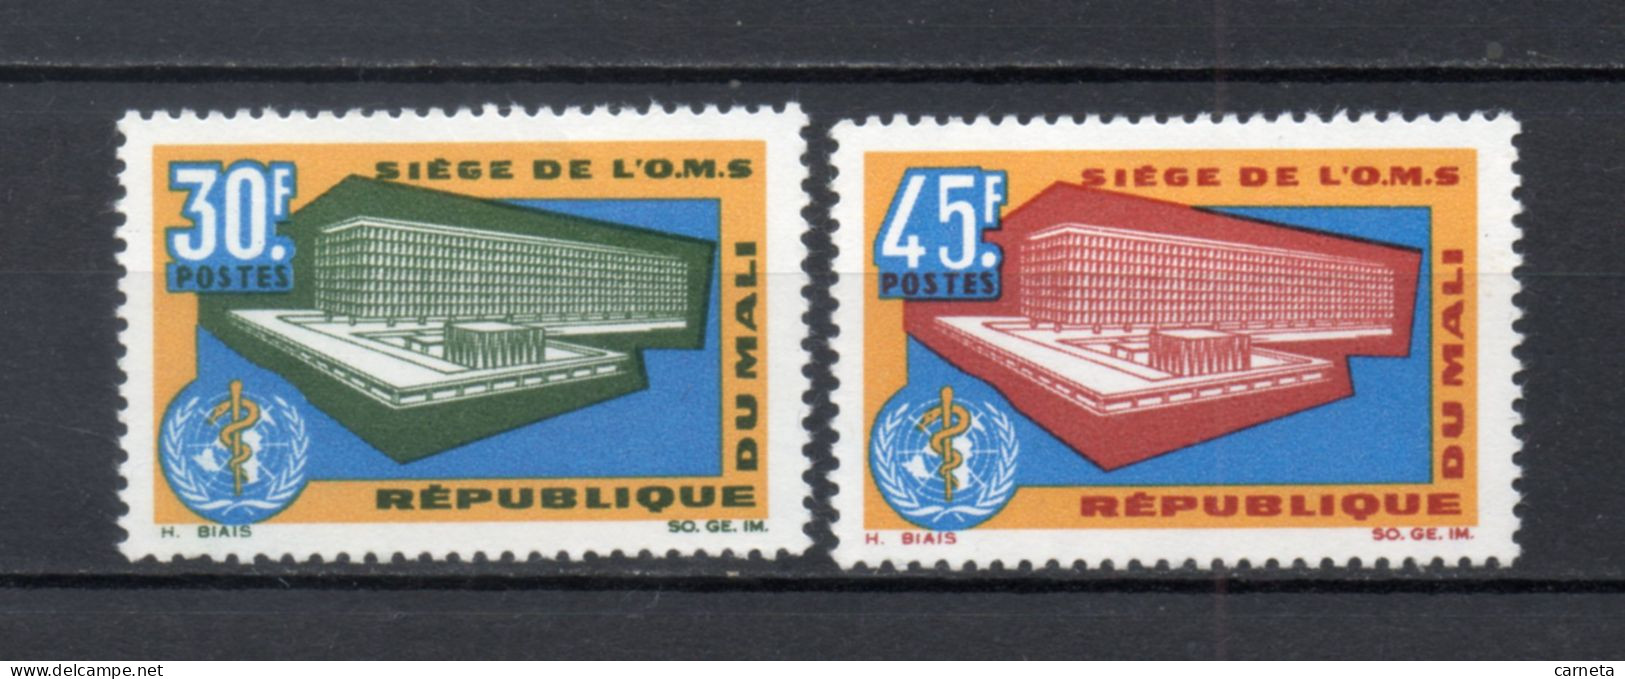 MALI  N° 88 + 89   NEUFS SANS CHARNIERE  COTE 2.00€    SANTE OMS - Mali (1959-...)